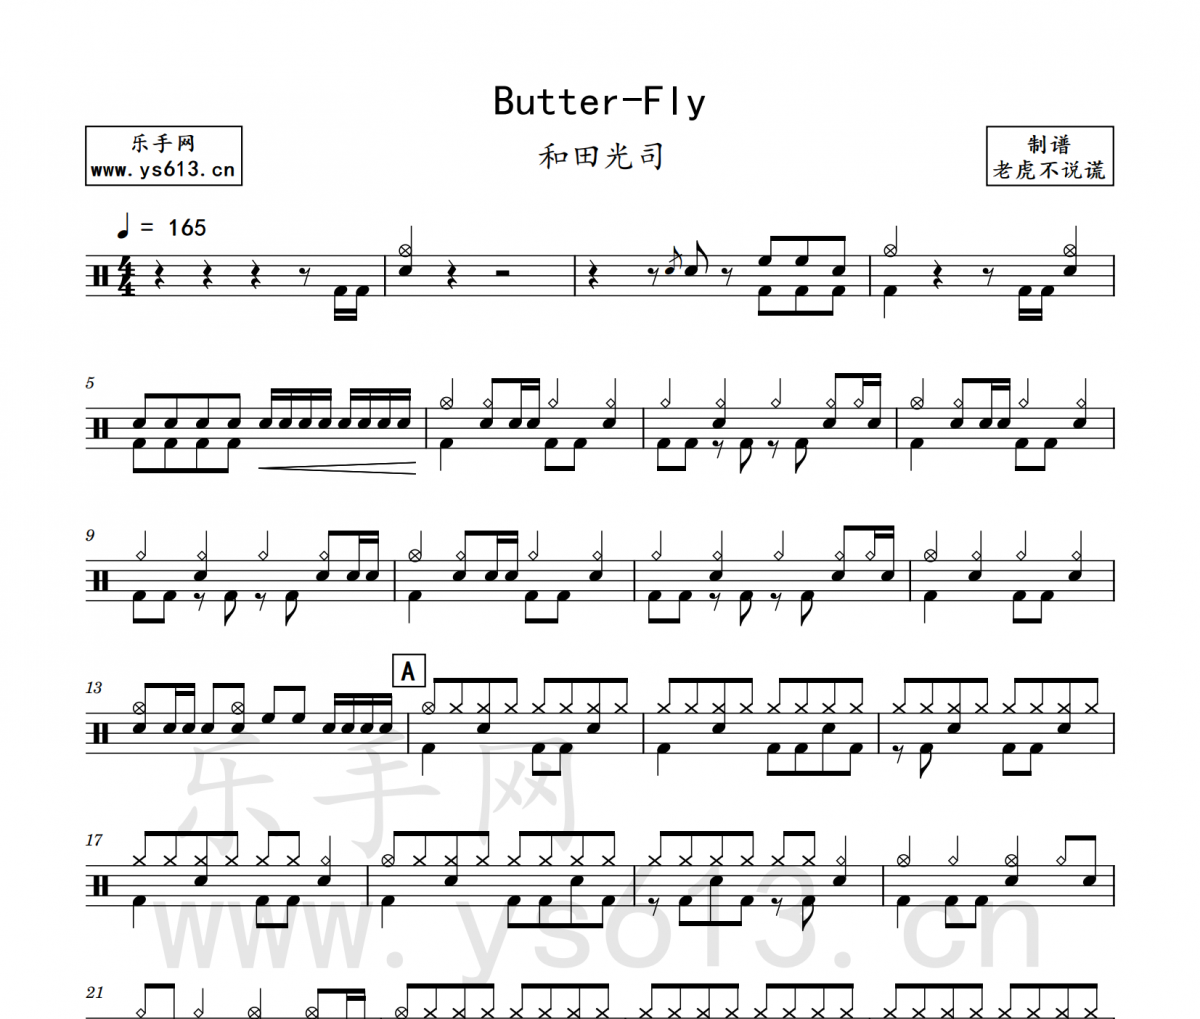 和田光司 Butter-Fly (蝴蝶)架子鼓谱 老虎不说谎制谱